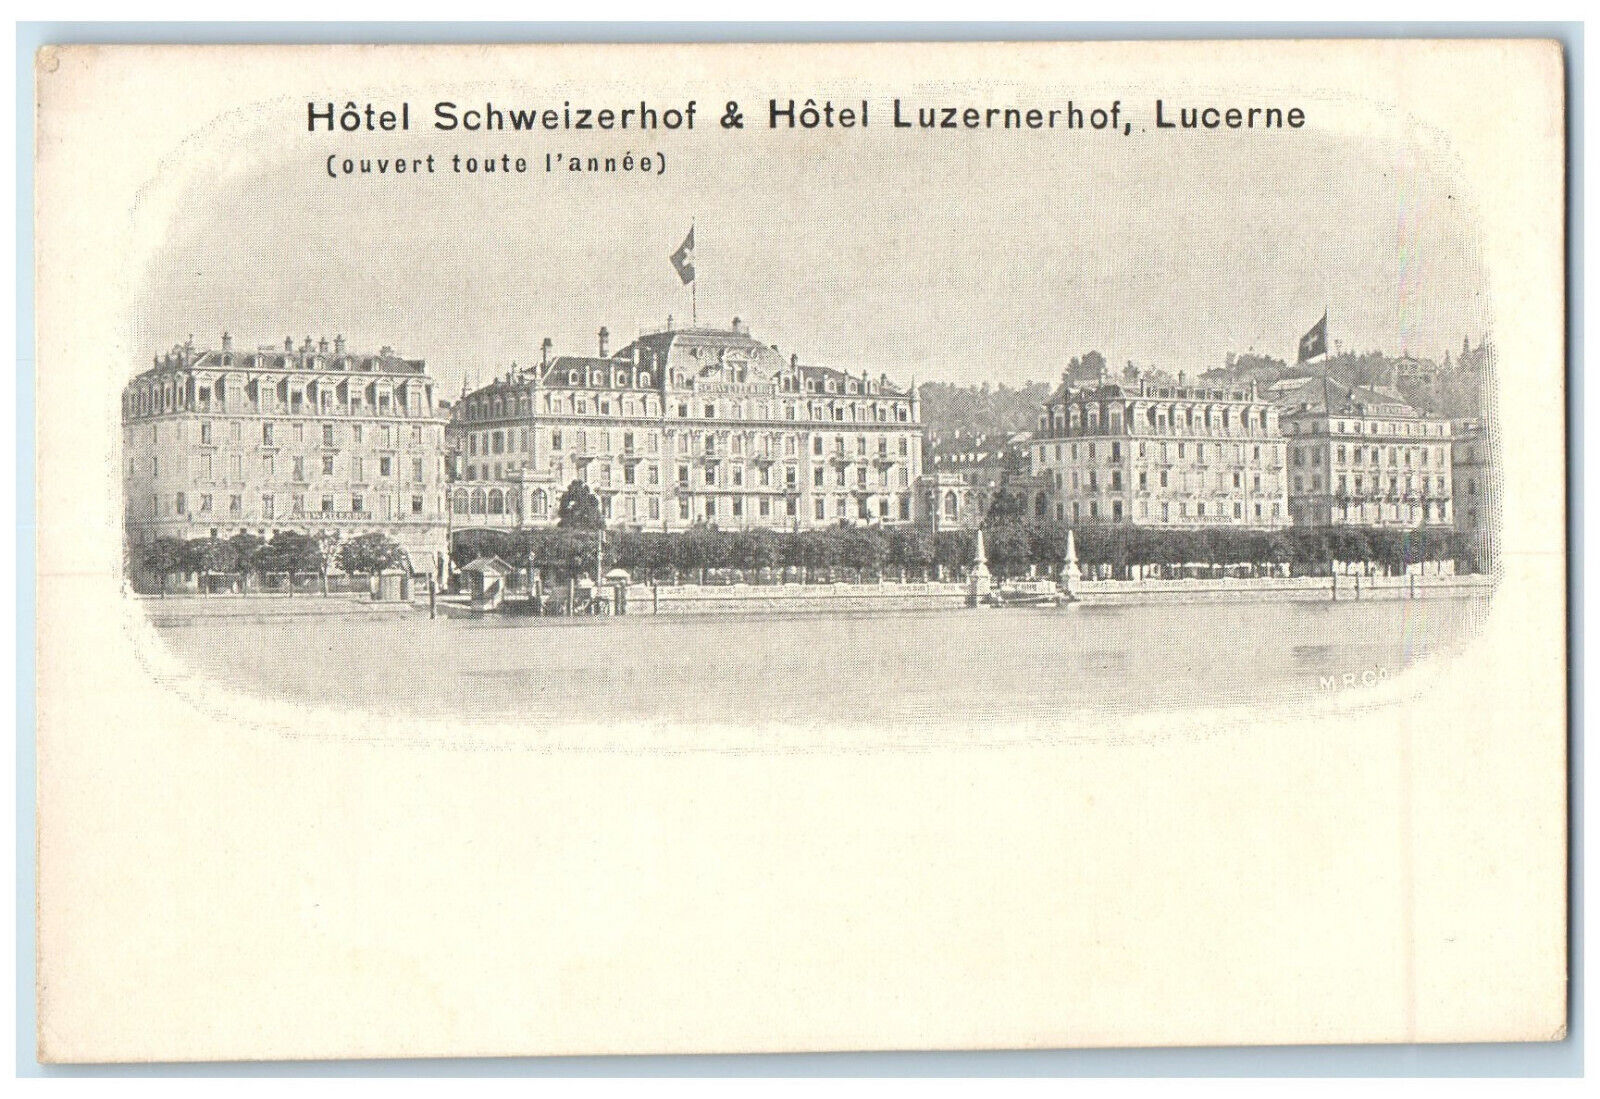 c1905 Hotel Schweizerhof & Hotel Luzernerhof Lucrne Switzerland Postcard